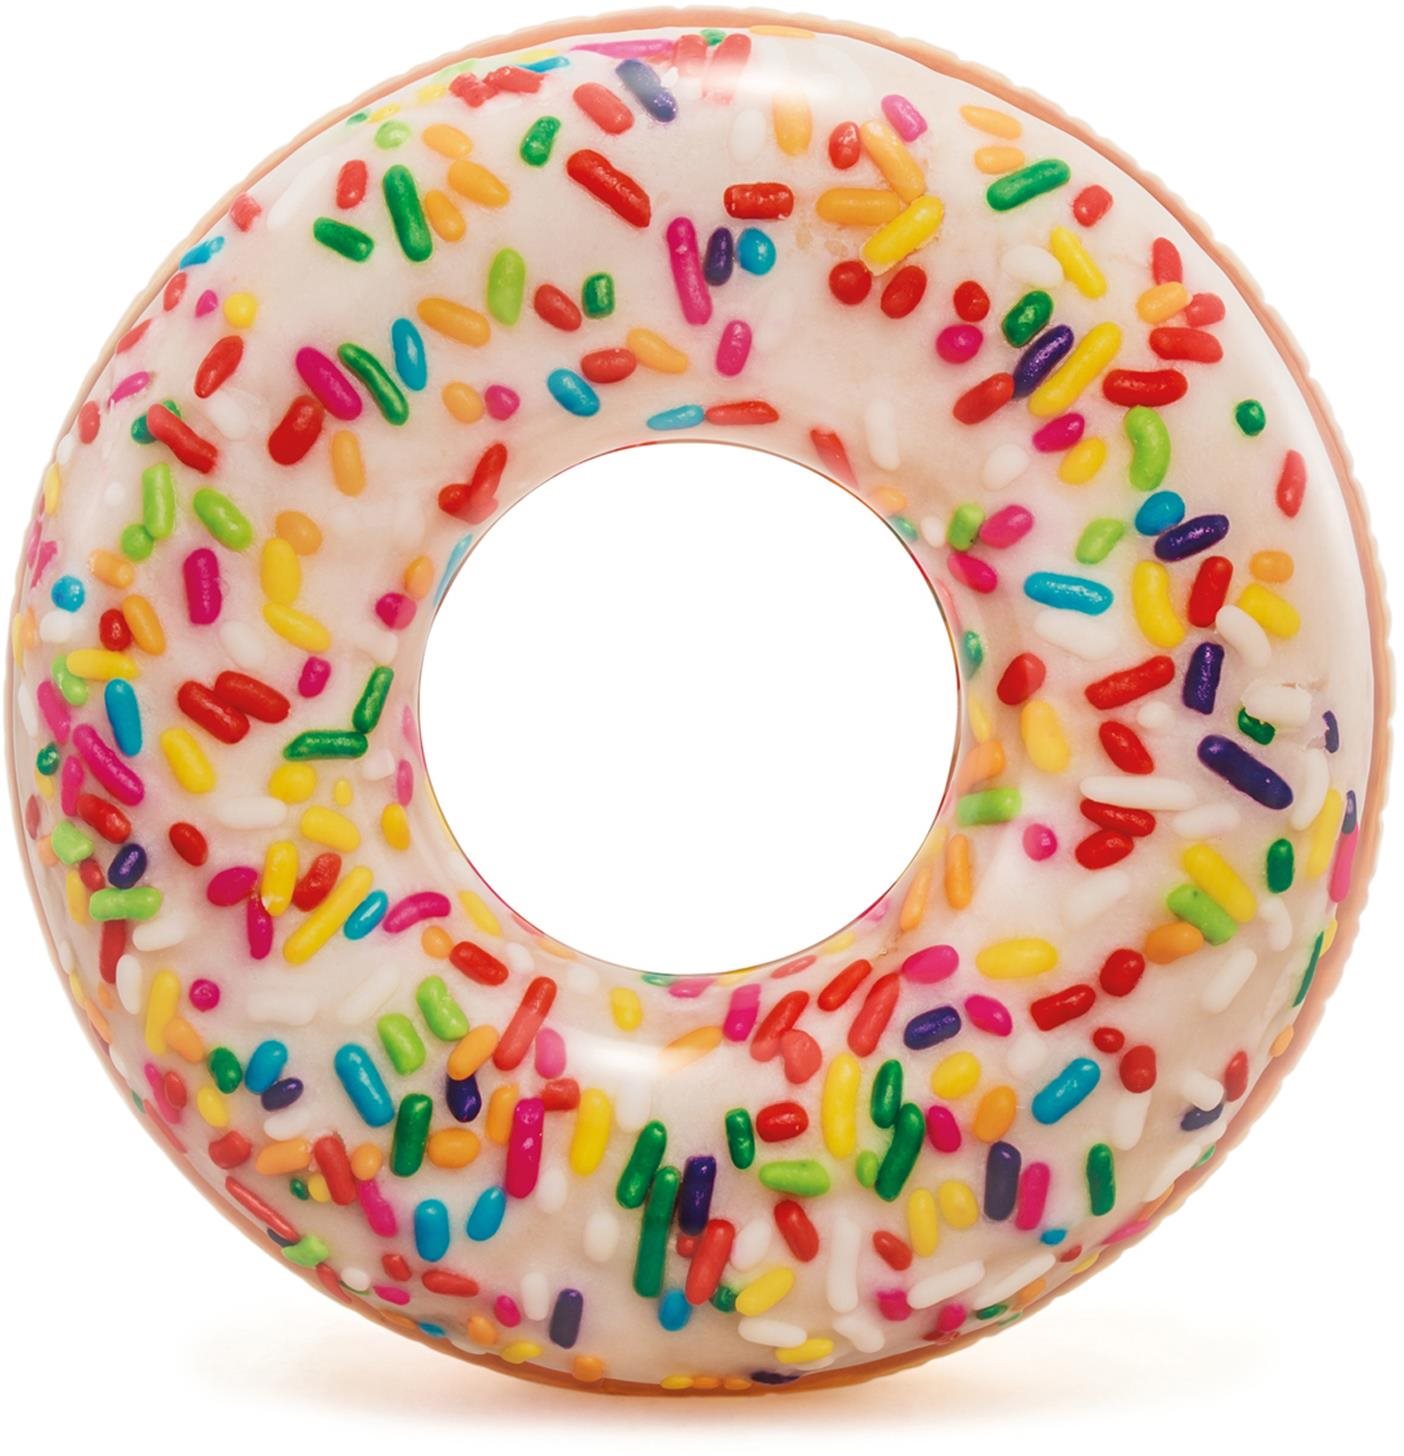 Úszógumi Intex Donut színes